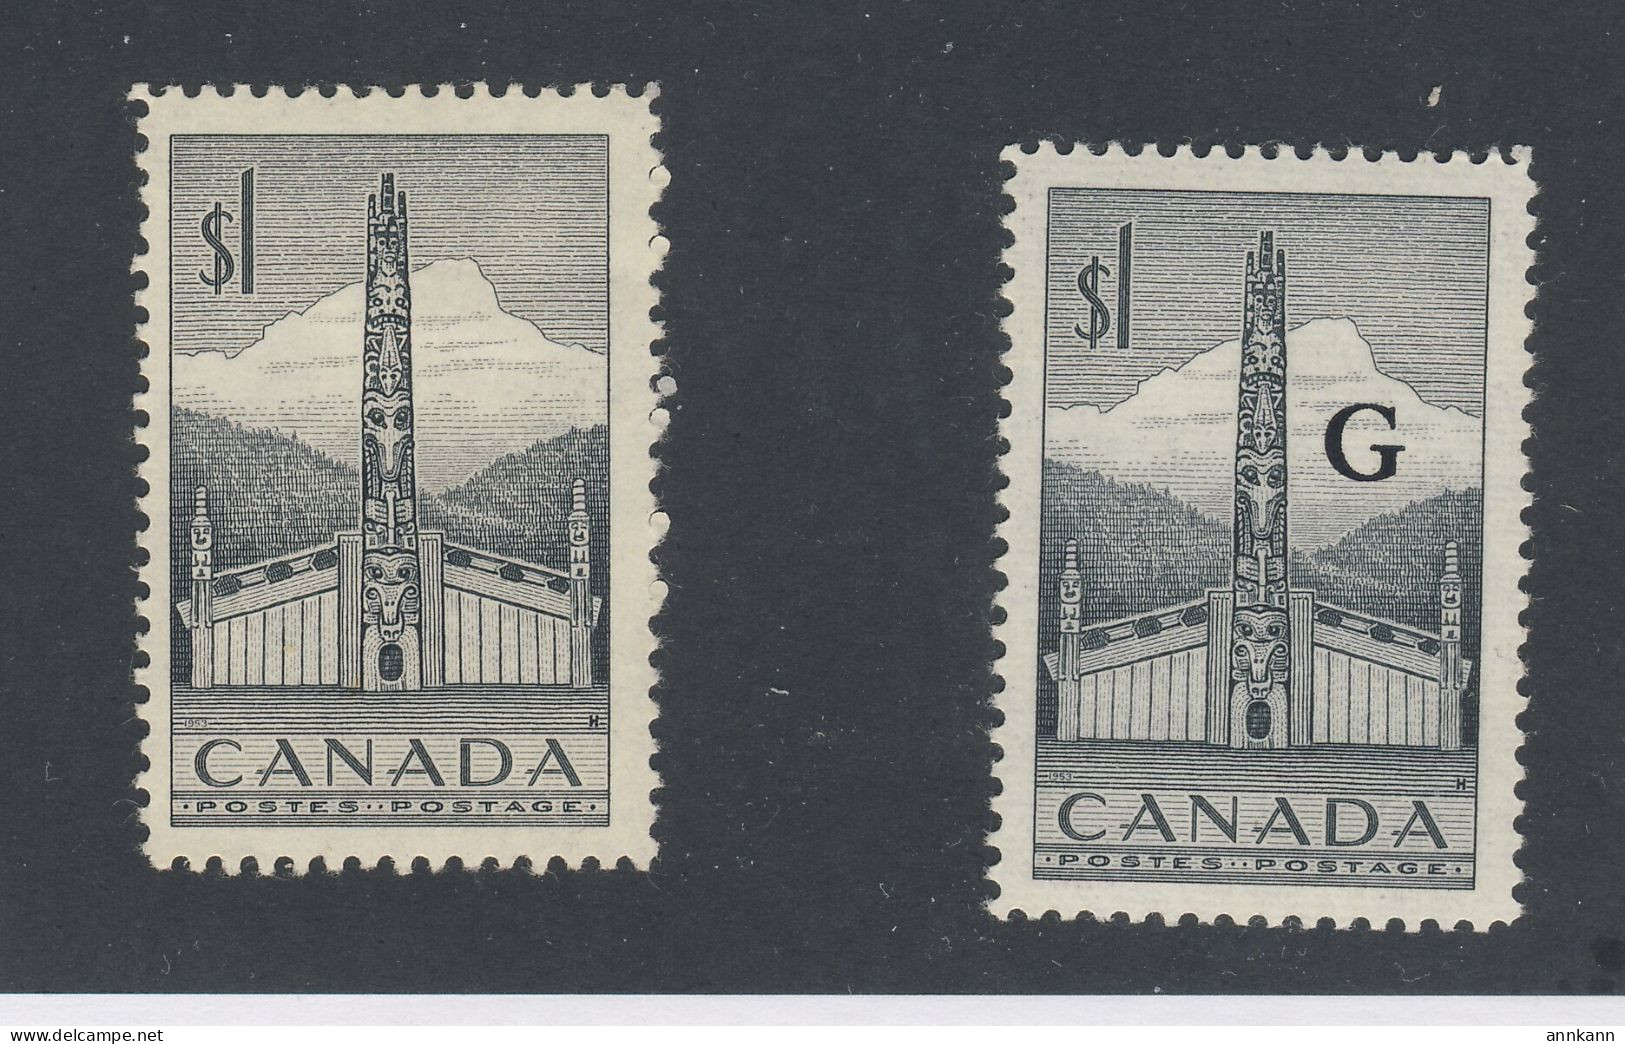 2x Canada MH Stamps #321 -$1.00 Totem & #032 -$1.00 Totem "G" GV = $17.00 - Sovraccarichi